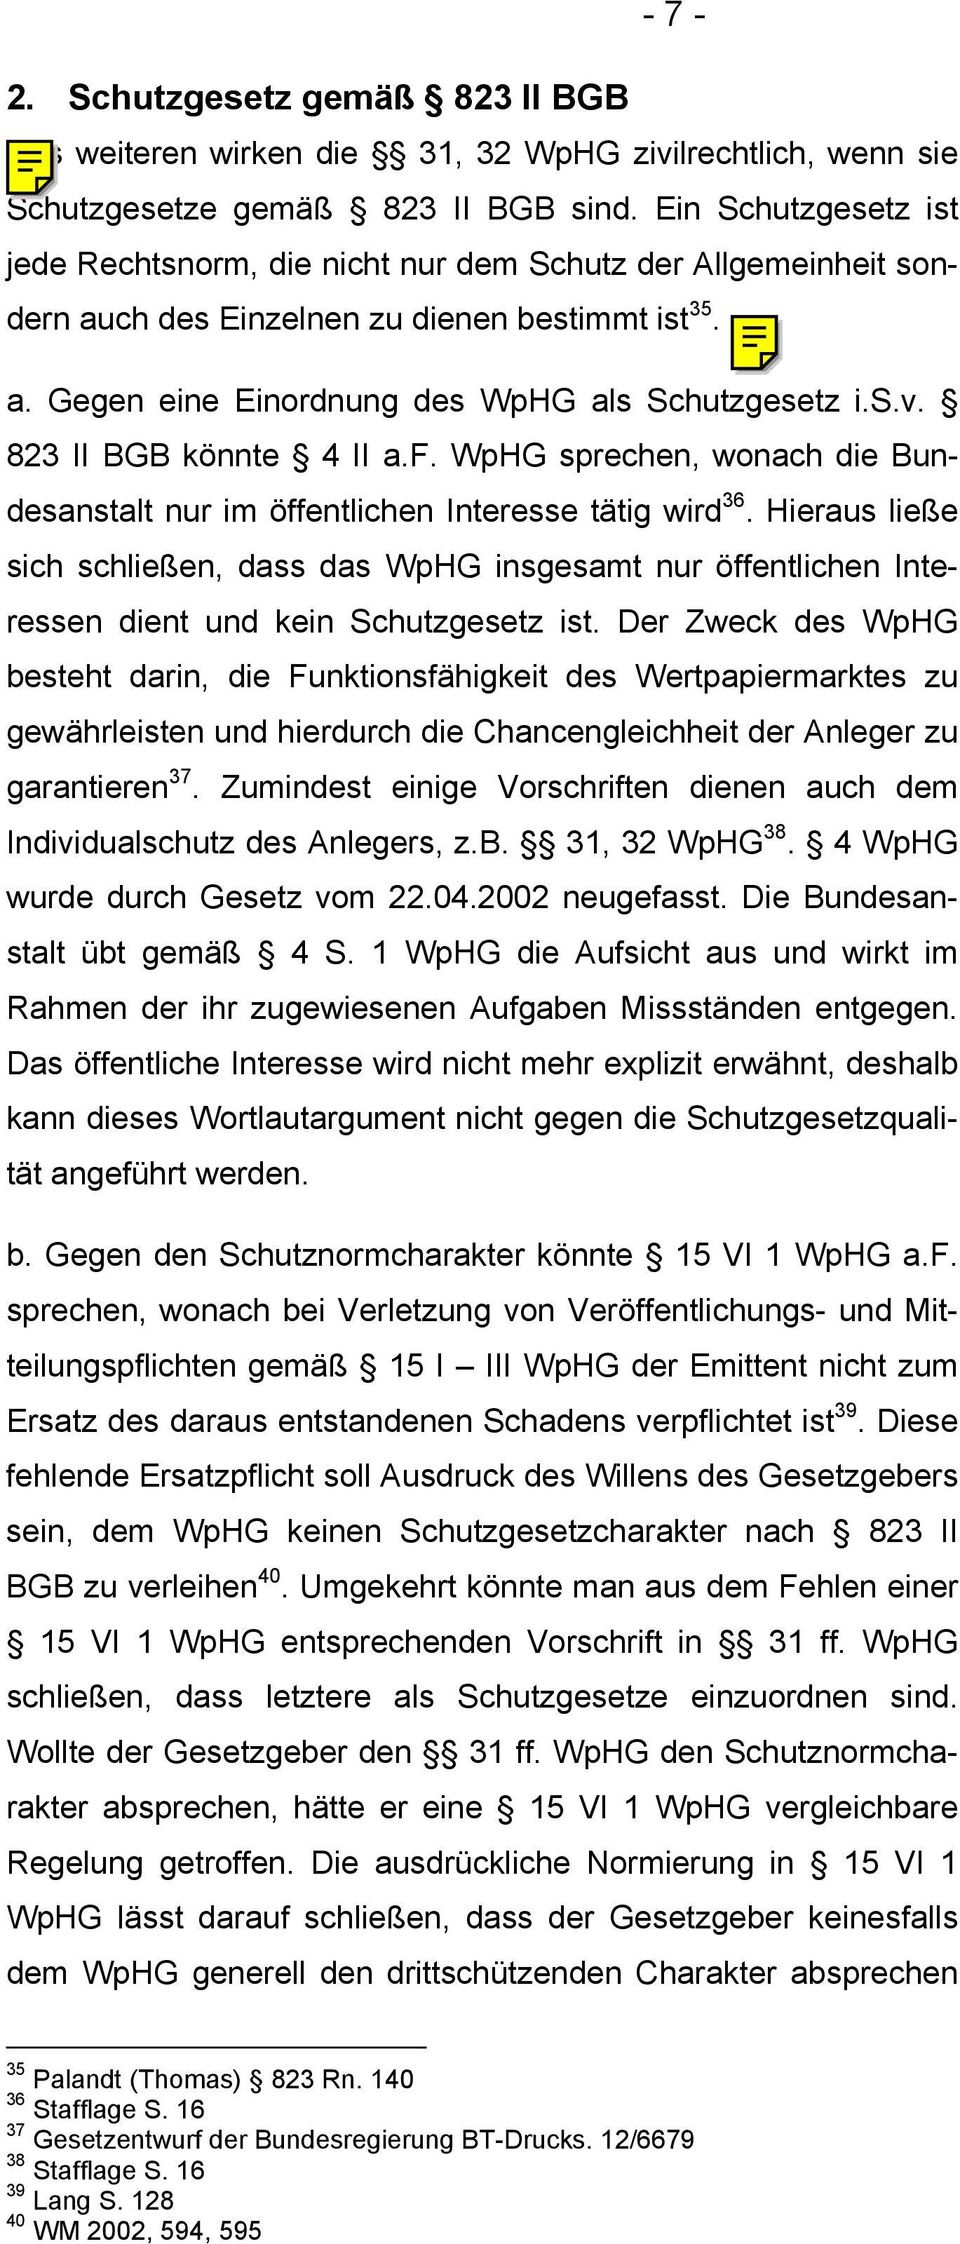 823 II BGB könnte 4 II a.f. WpHG sprechen, wonach die Bundesanstalt nur im öffentlichen Interesse tätig wird 36.